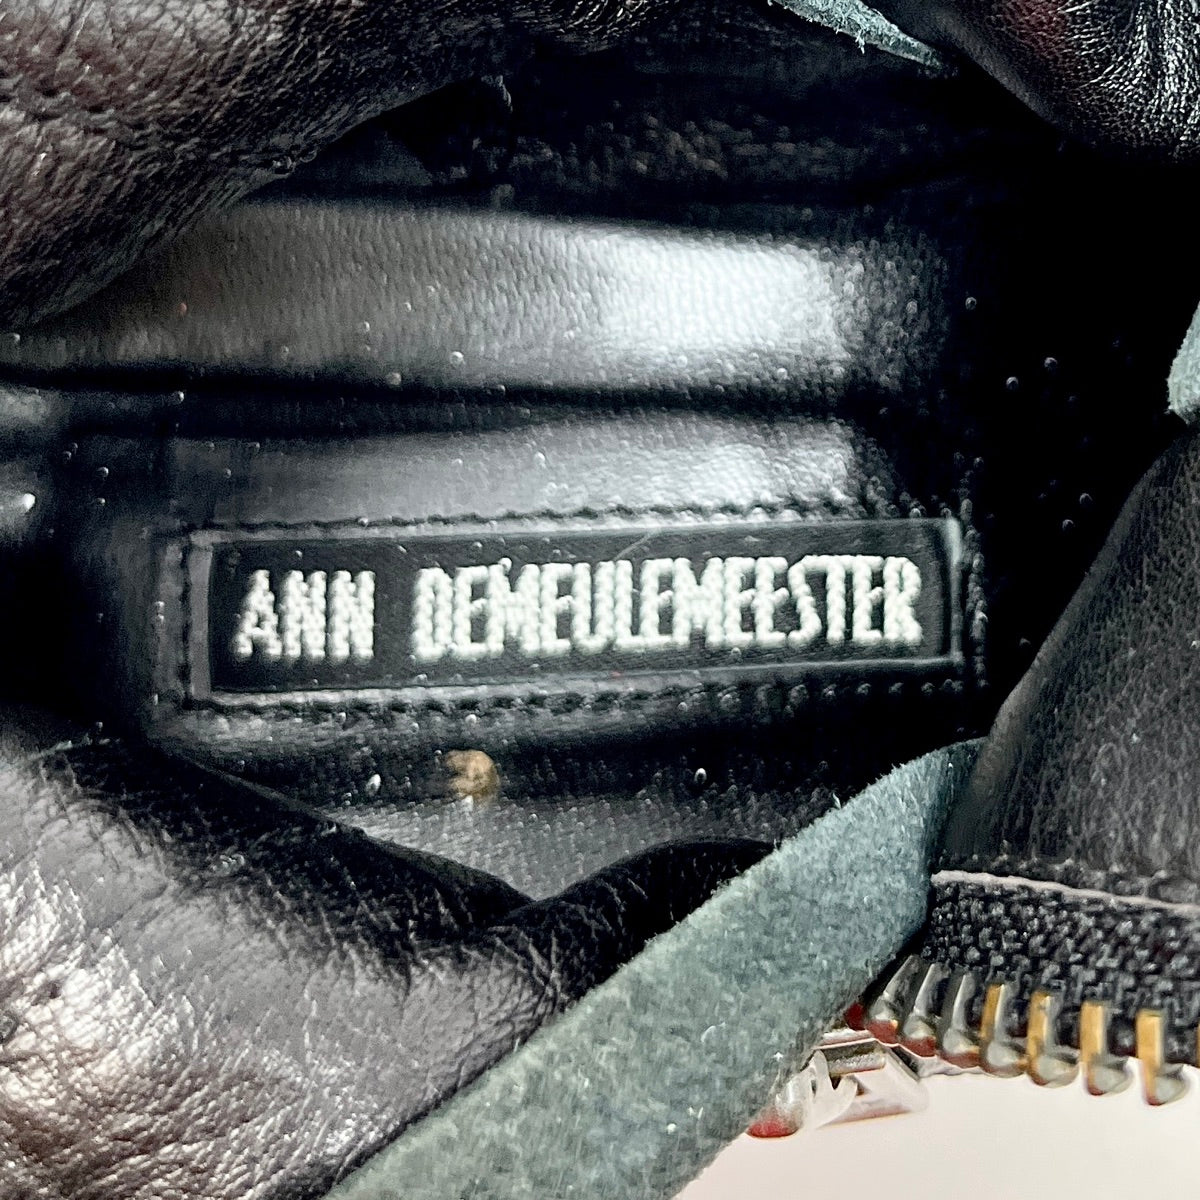 Ann Demeulemeester Boots